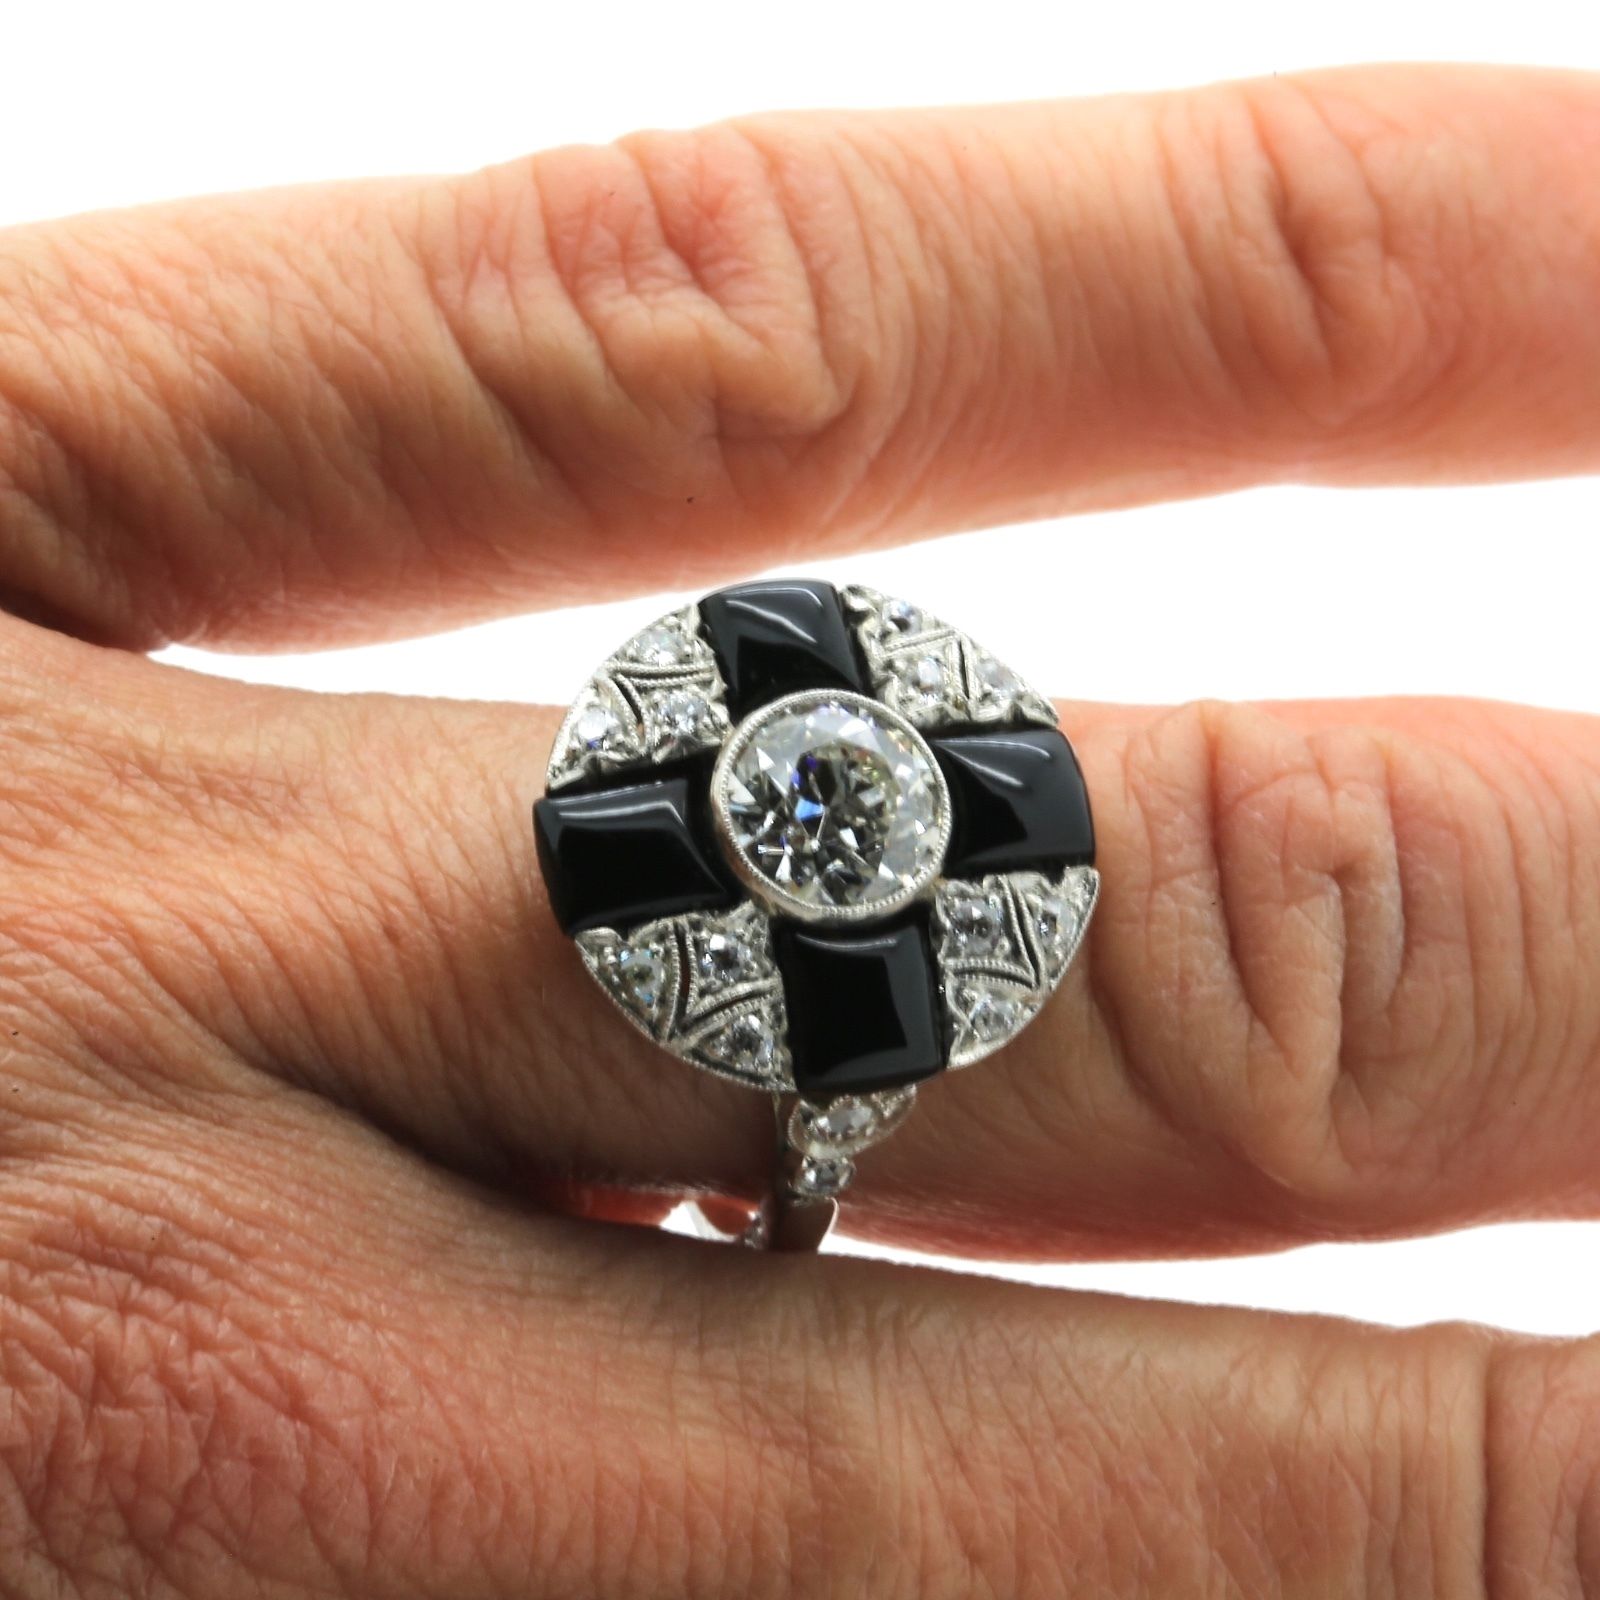 Antique Art Deco Cluster Ring in Platinum, 1.09 ct center Diamond & Onyx. EGL